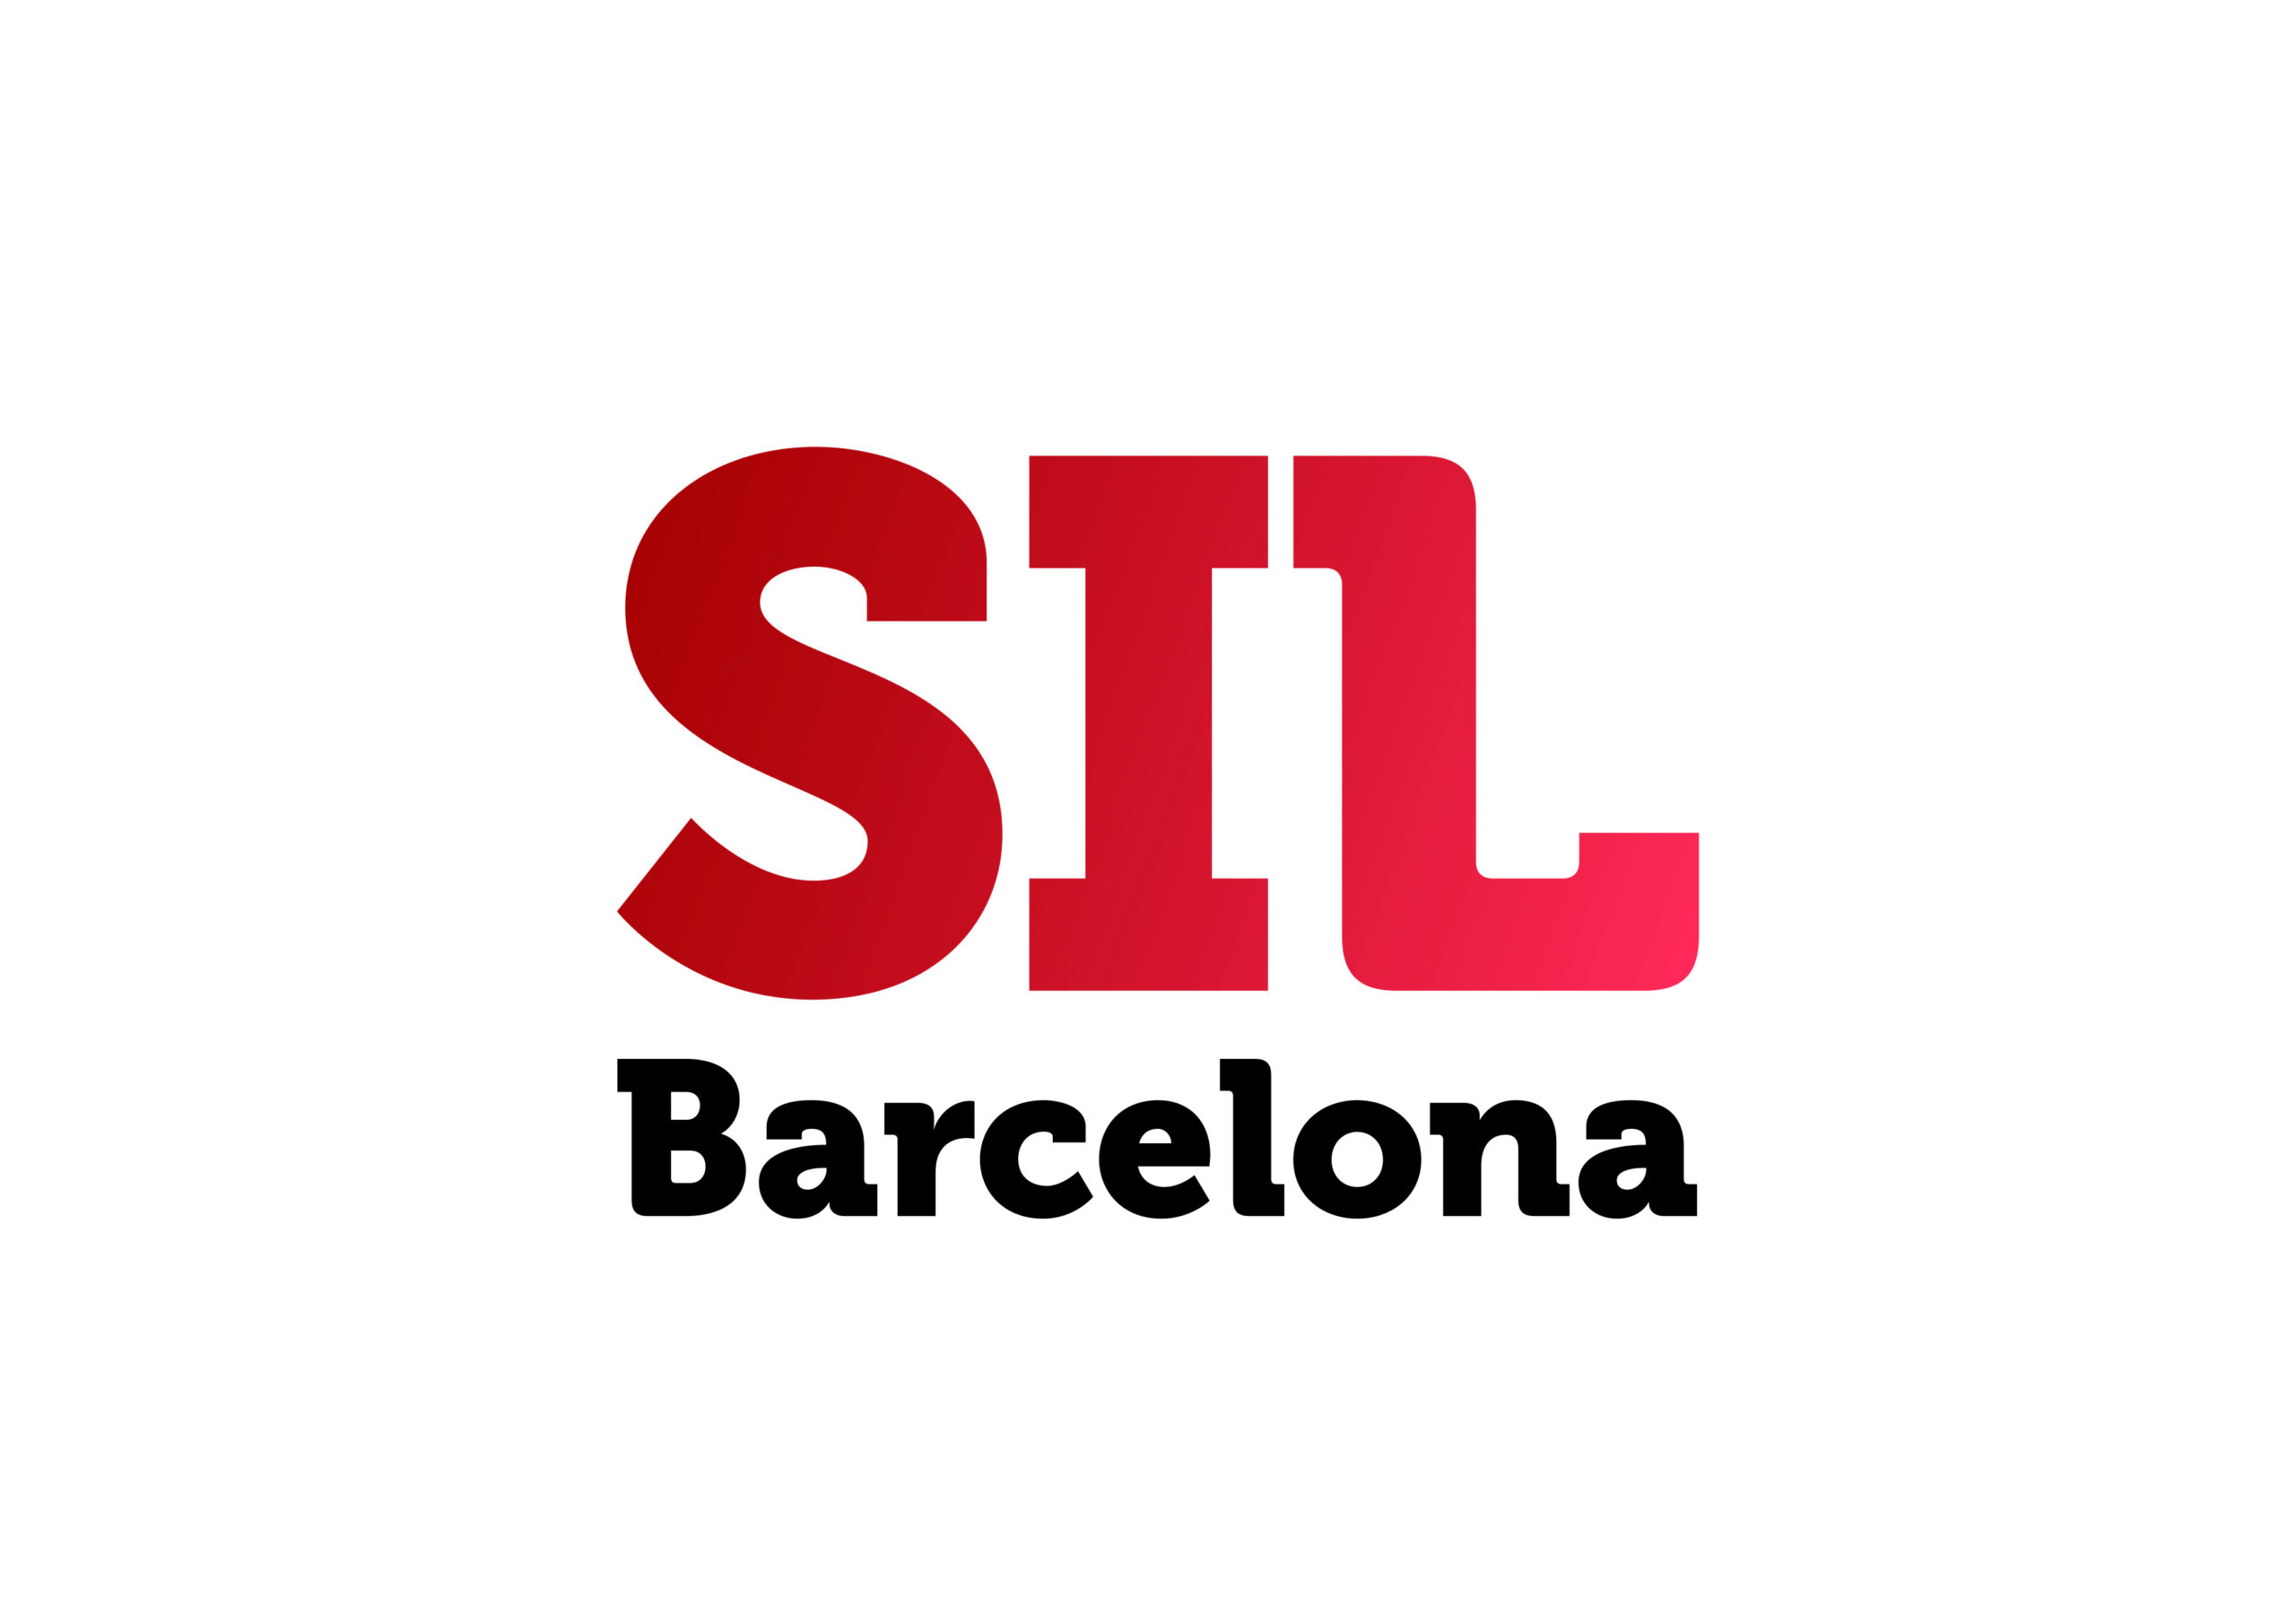 SIL Barcelona